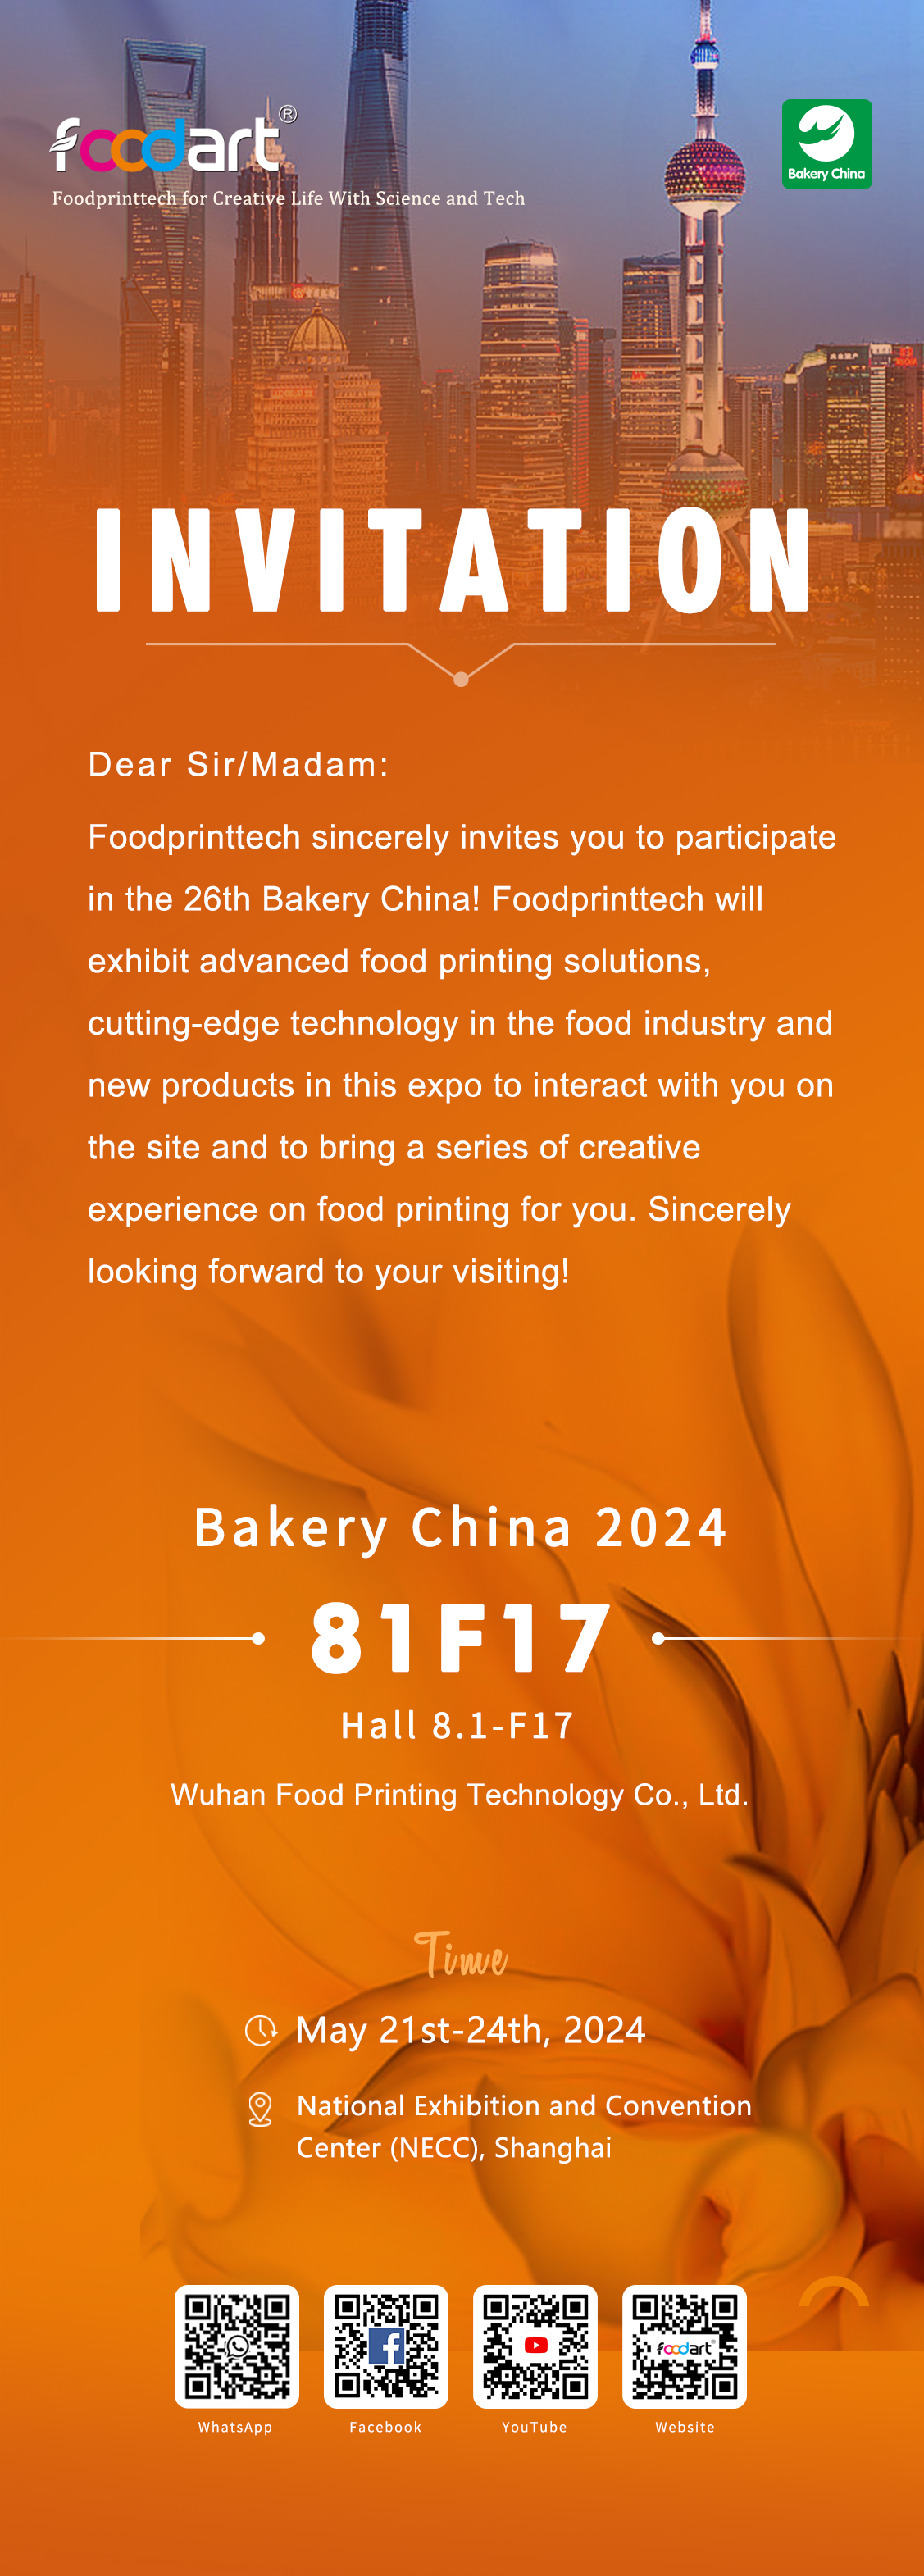 دعوة لحضور الدورة السادسة والعشرين لمخبز الصين في الفترة من 21 إلى 24 مايو 2024